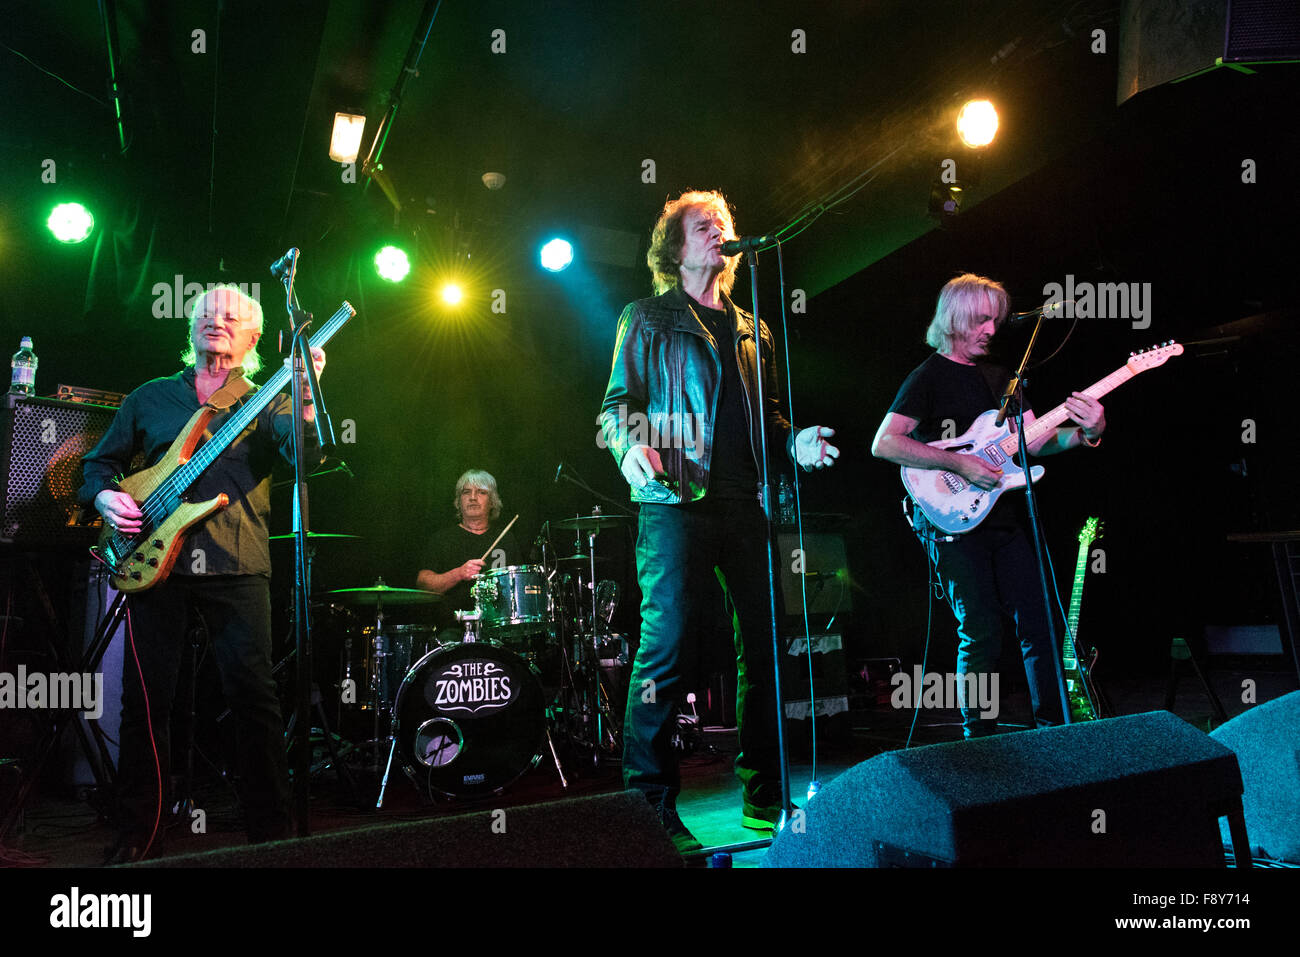 Rock The Zombies en concert à Manchester Academy, 9e décembre 2015. Renan Luce, chanteur, est centre. Banque D'Images